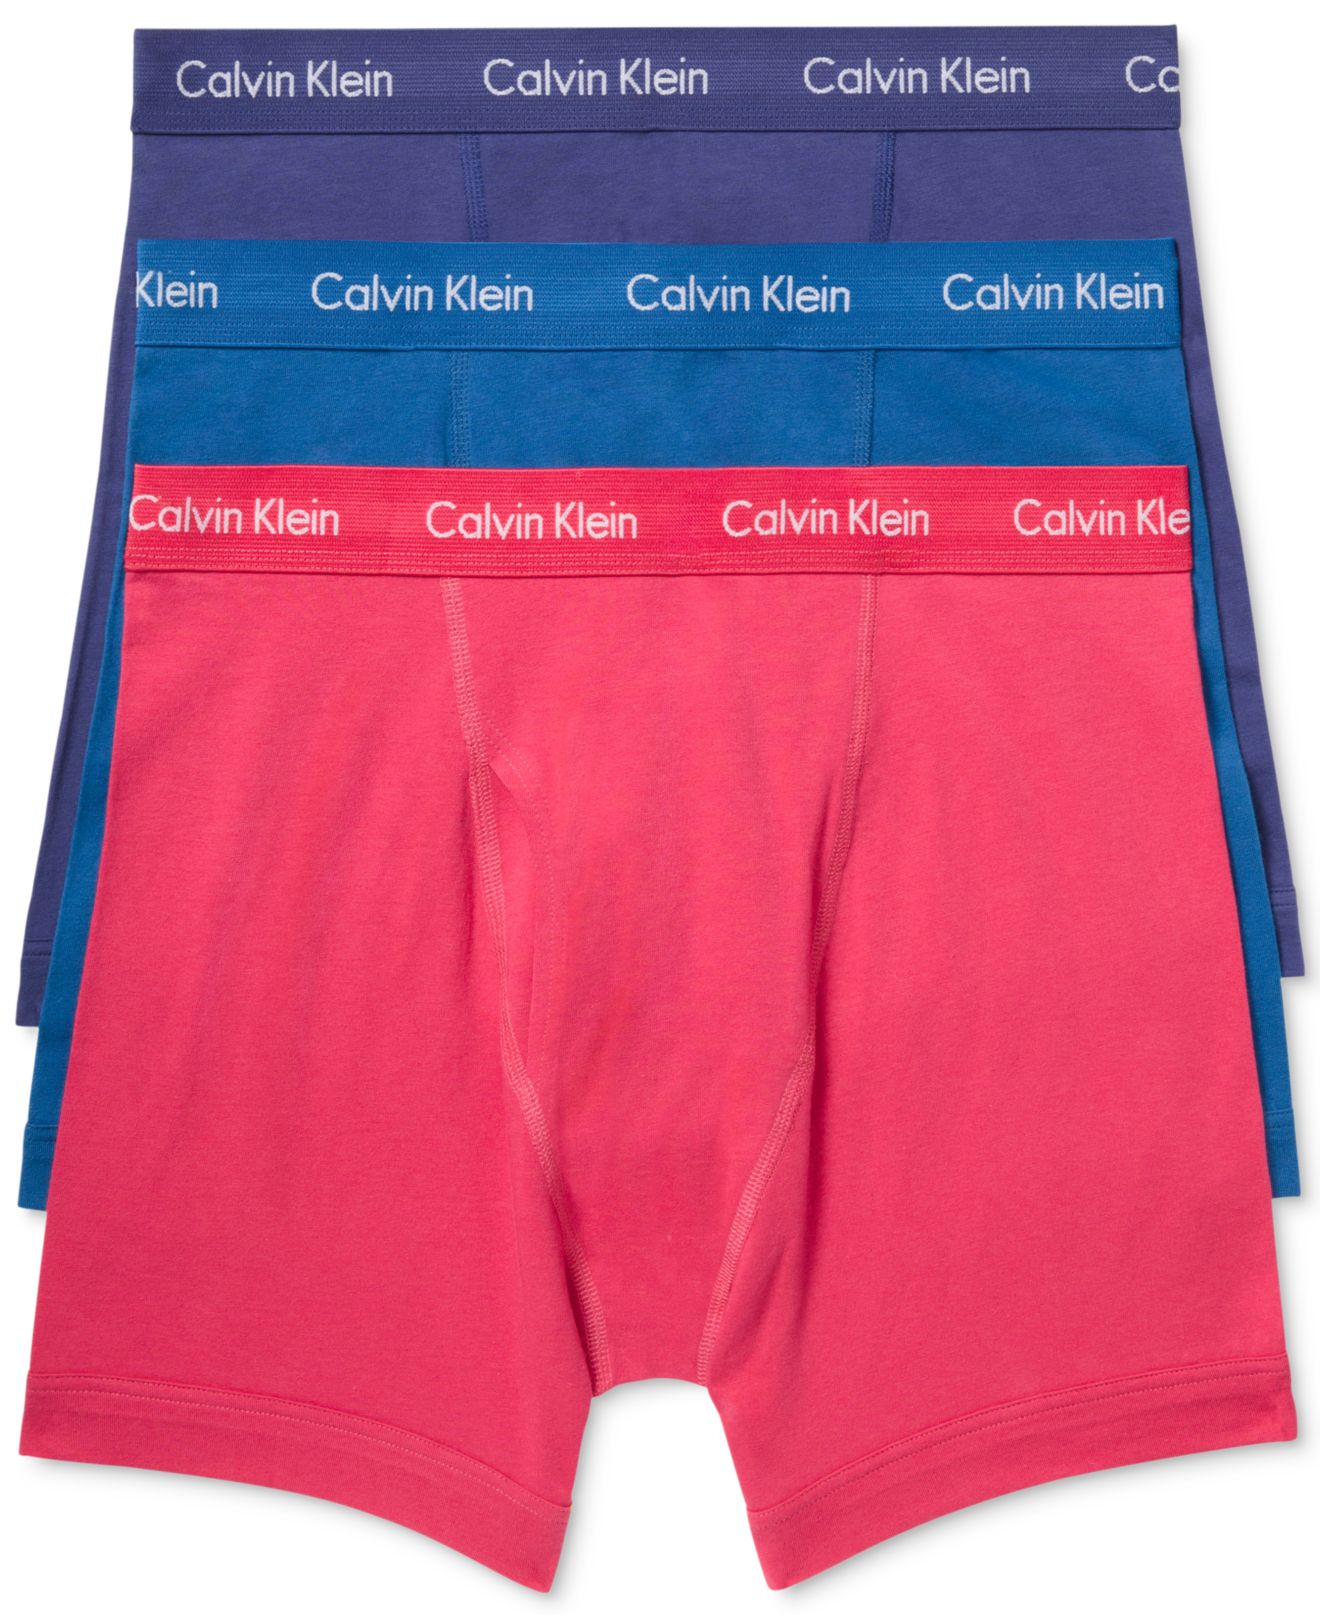 Pink Calvin Klein Underwear Mens Outlet, SAVE 54%.